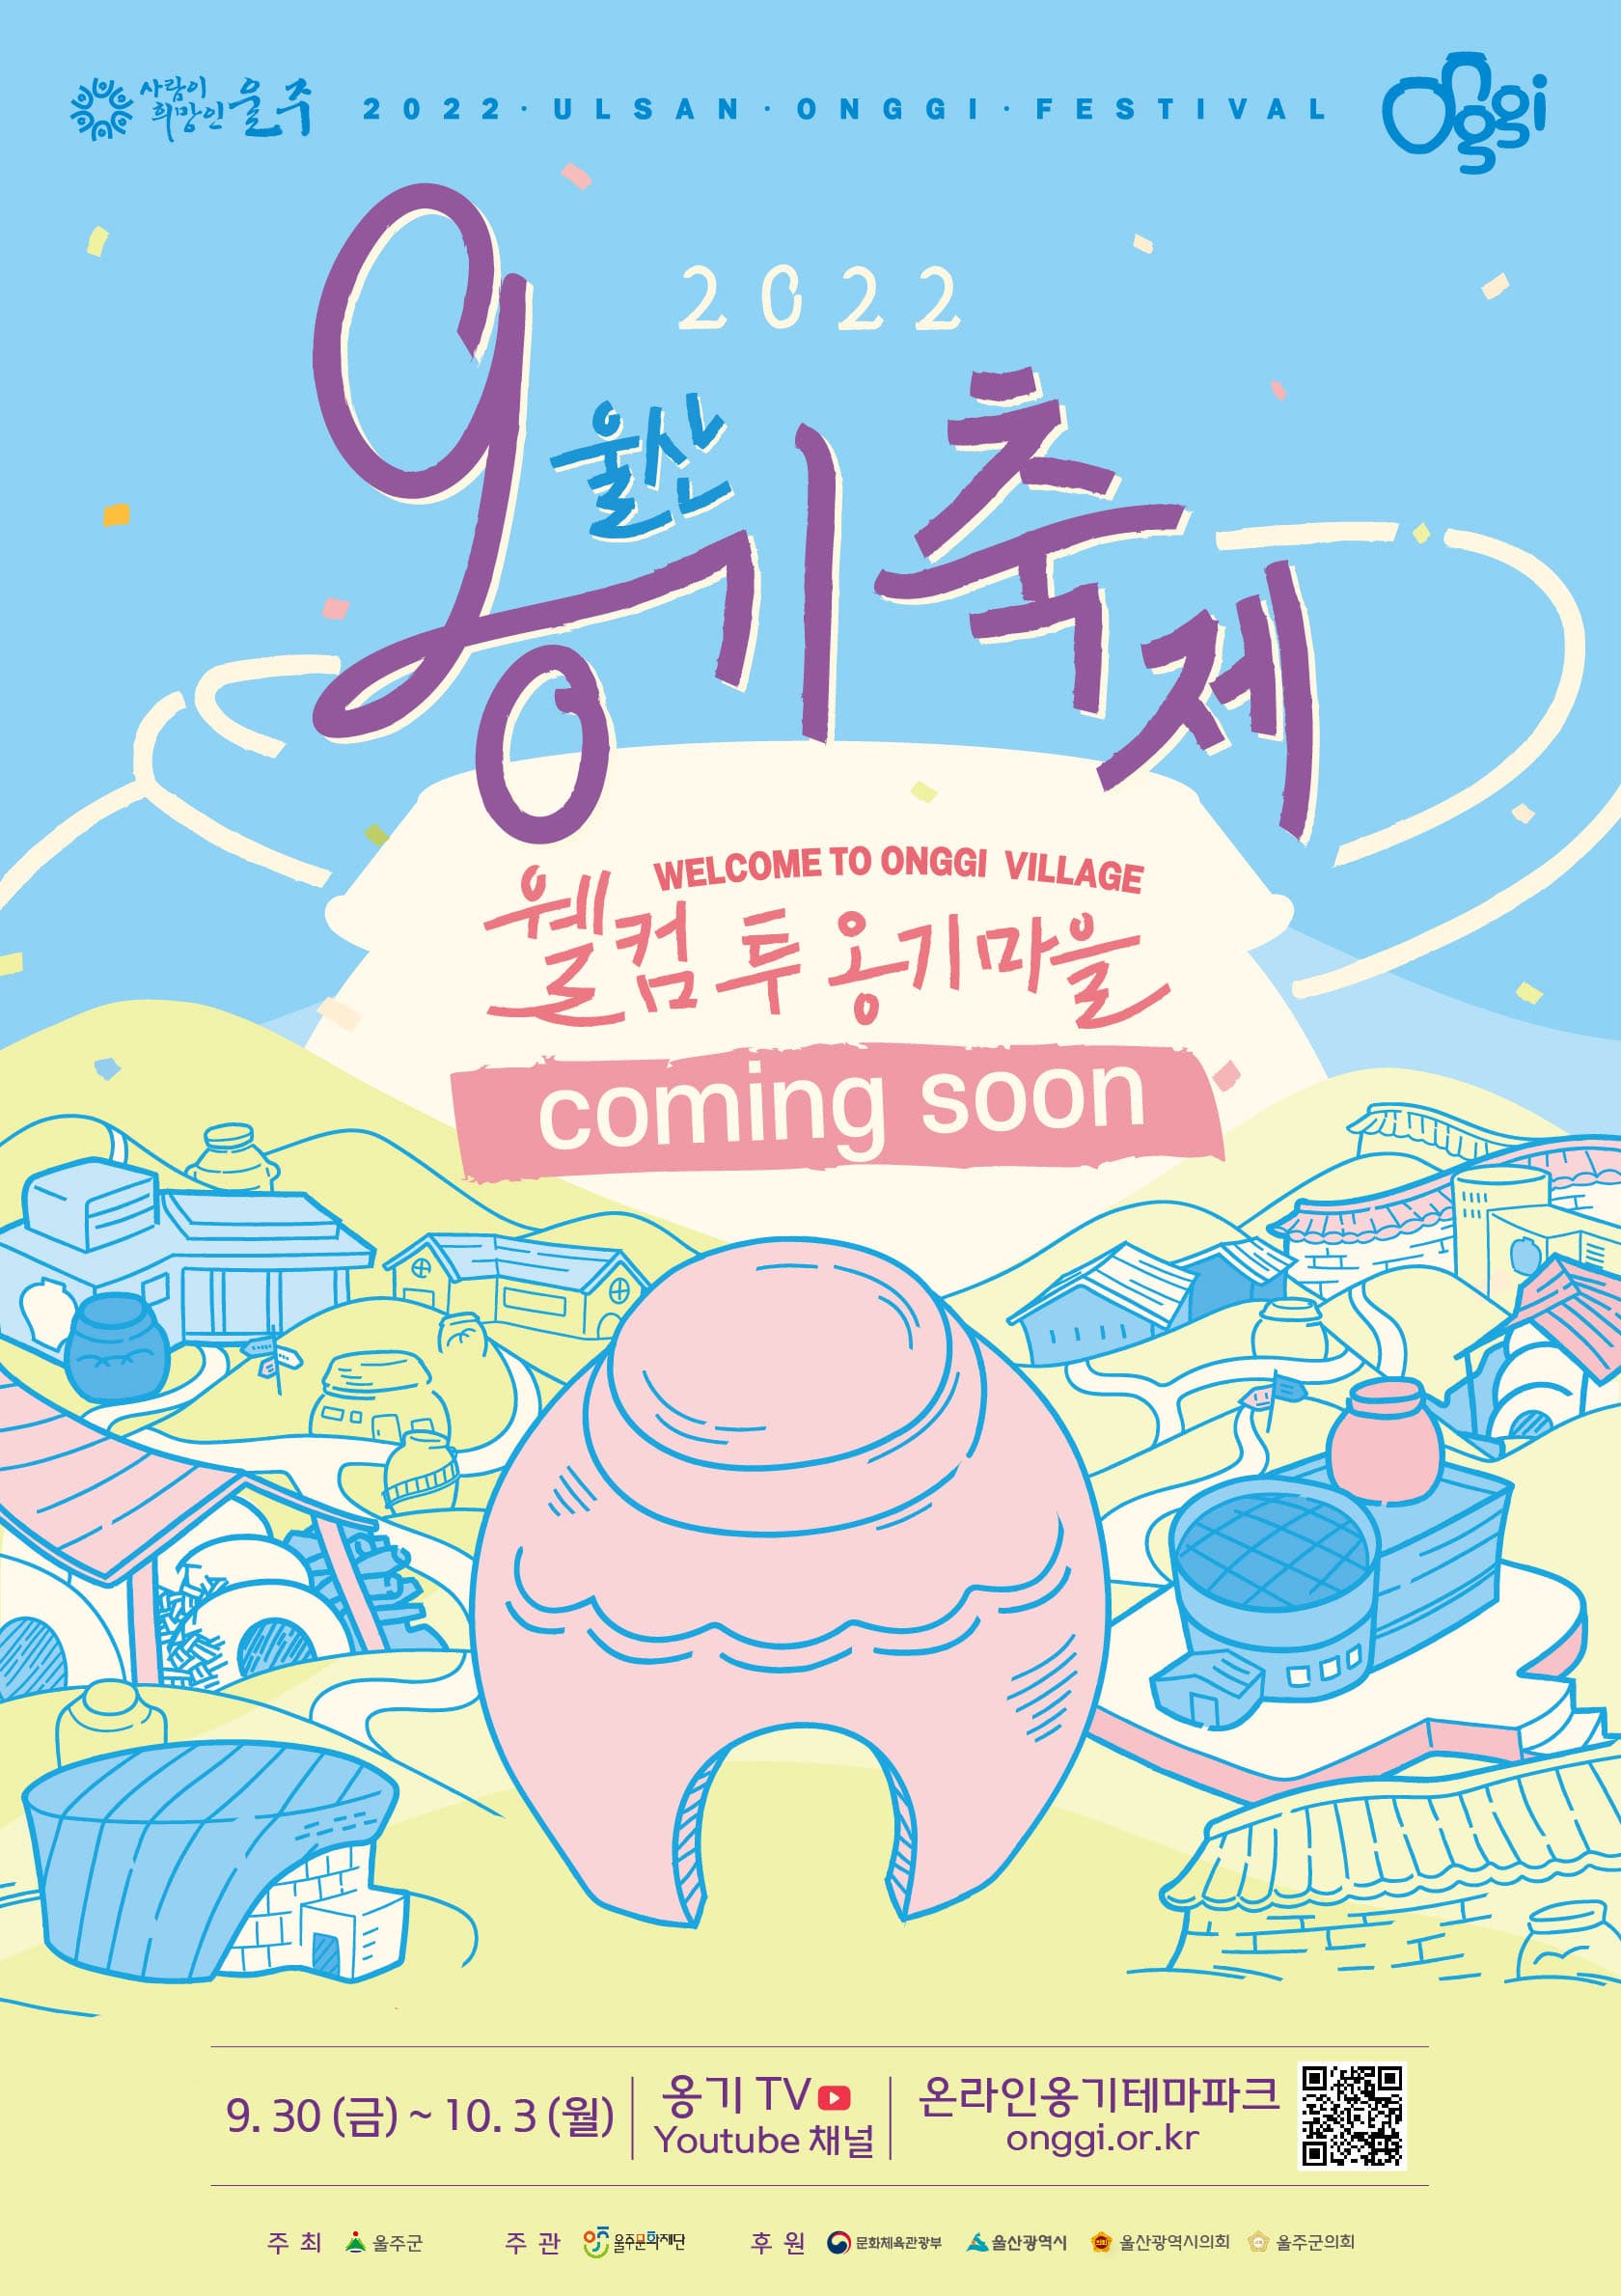 2022 울산옹기축제 | 월컴 투 옹기마을 | coming soon | 9.30(금)부터 10.3(월)까지